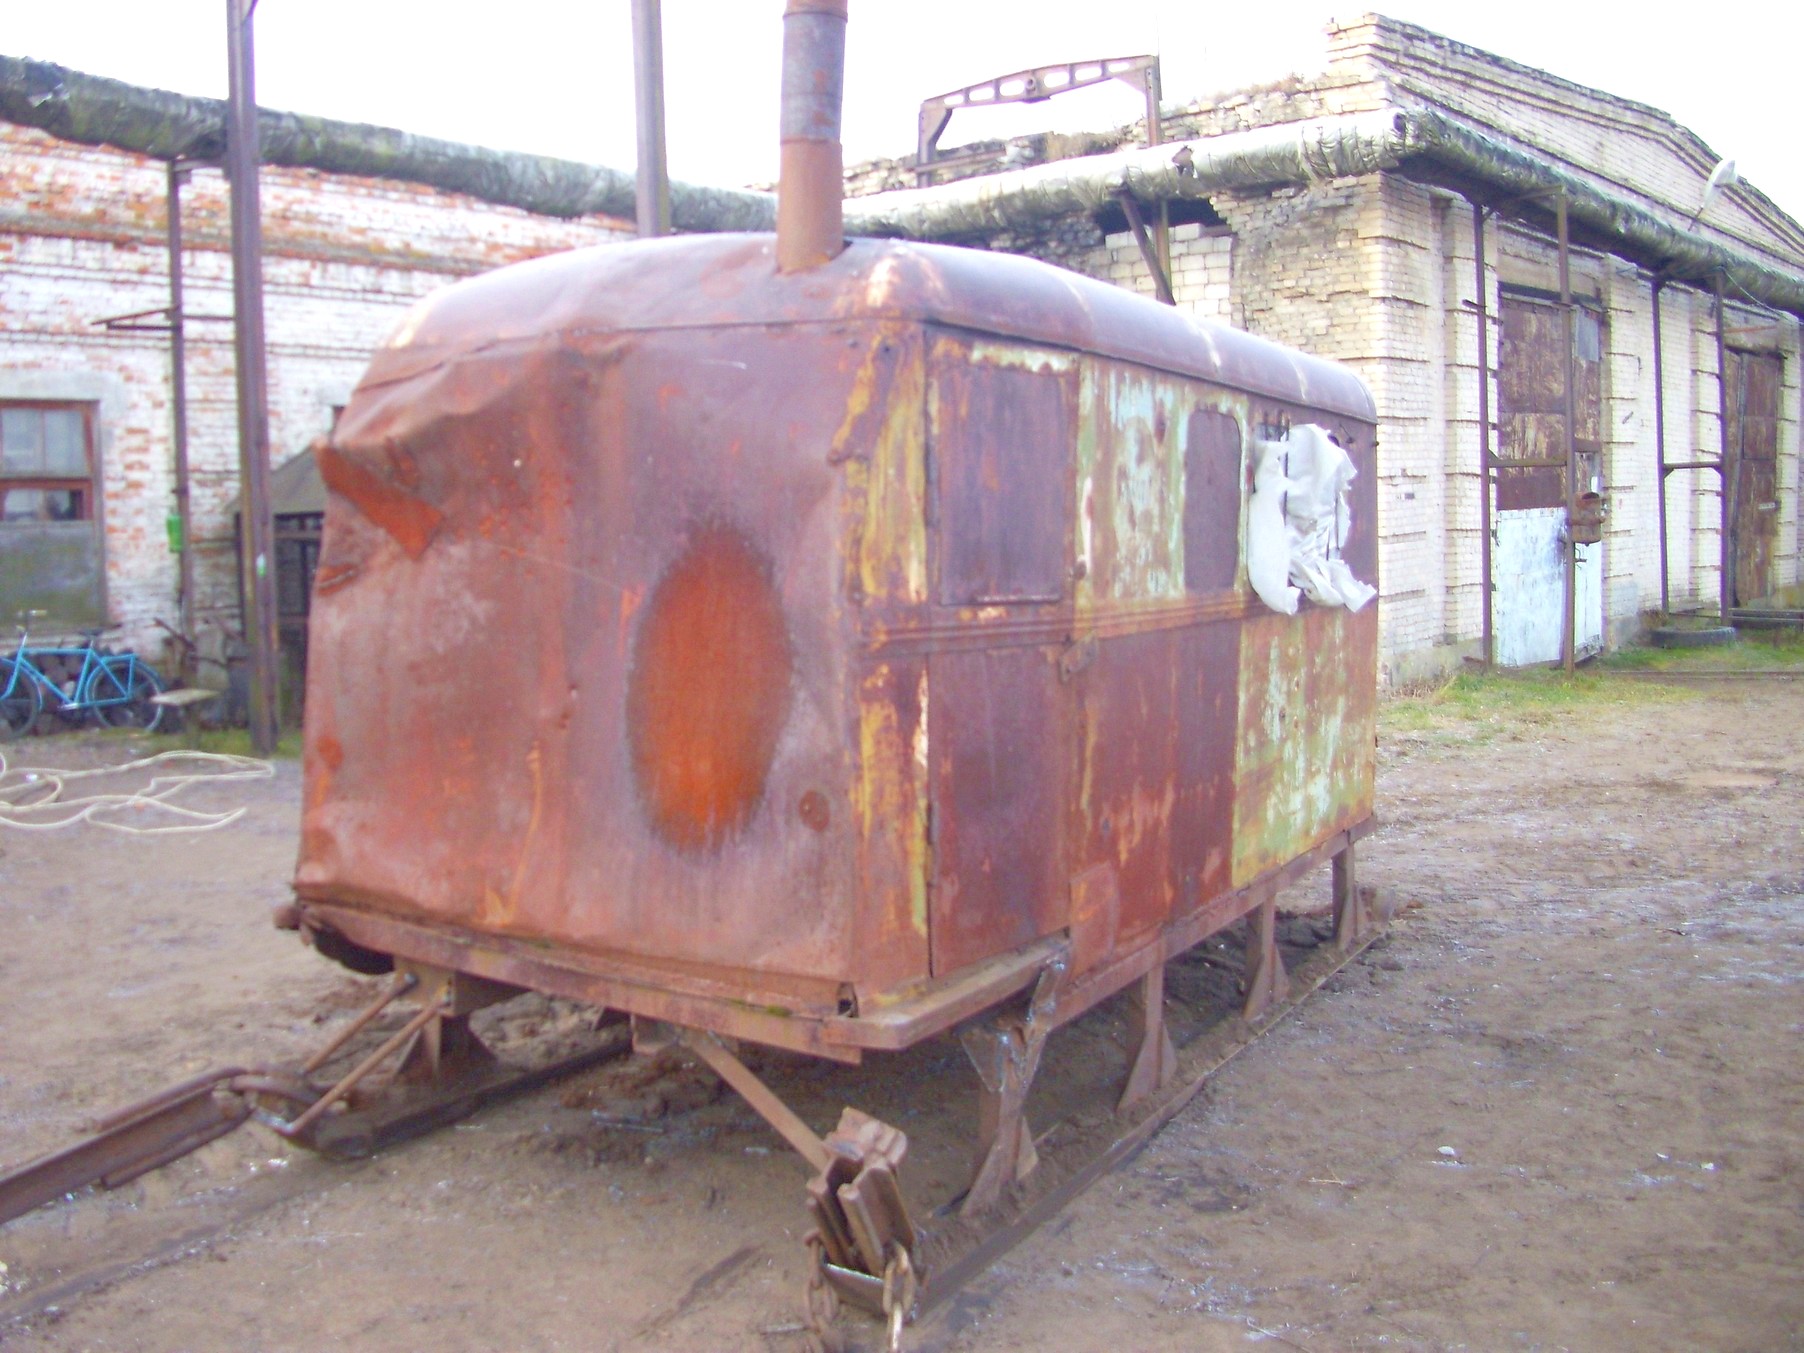 Узкоколейная железная дорога торфопредприятия «Татарка» — фотографии, сделанные в 2011 году (часть 2)